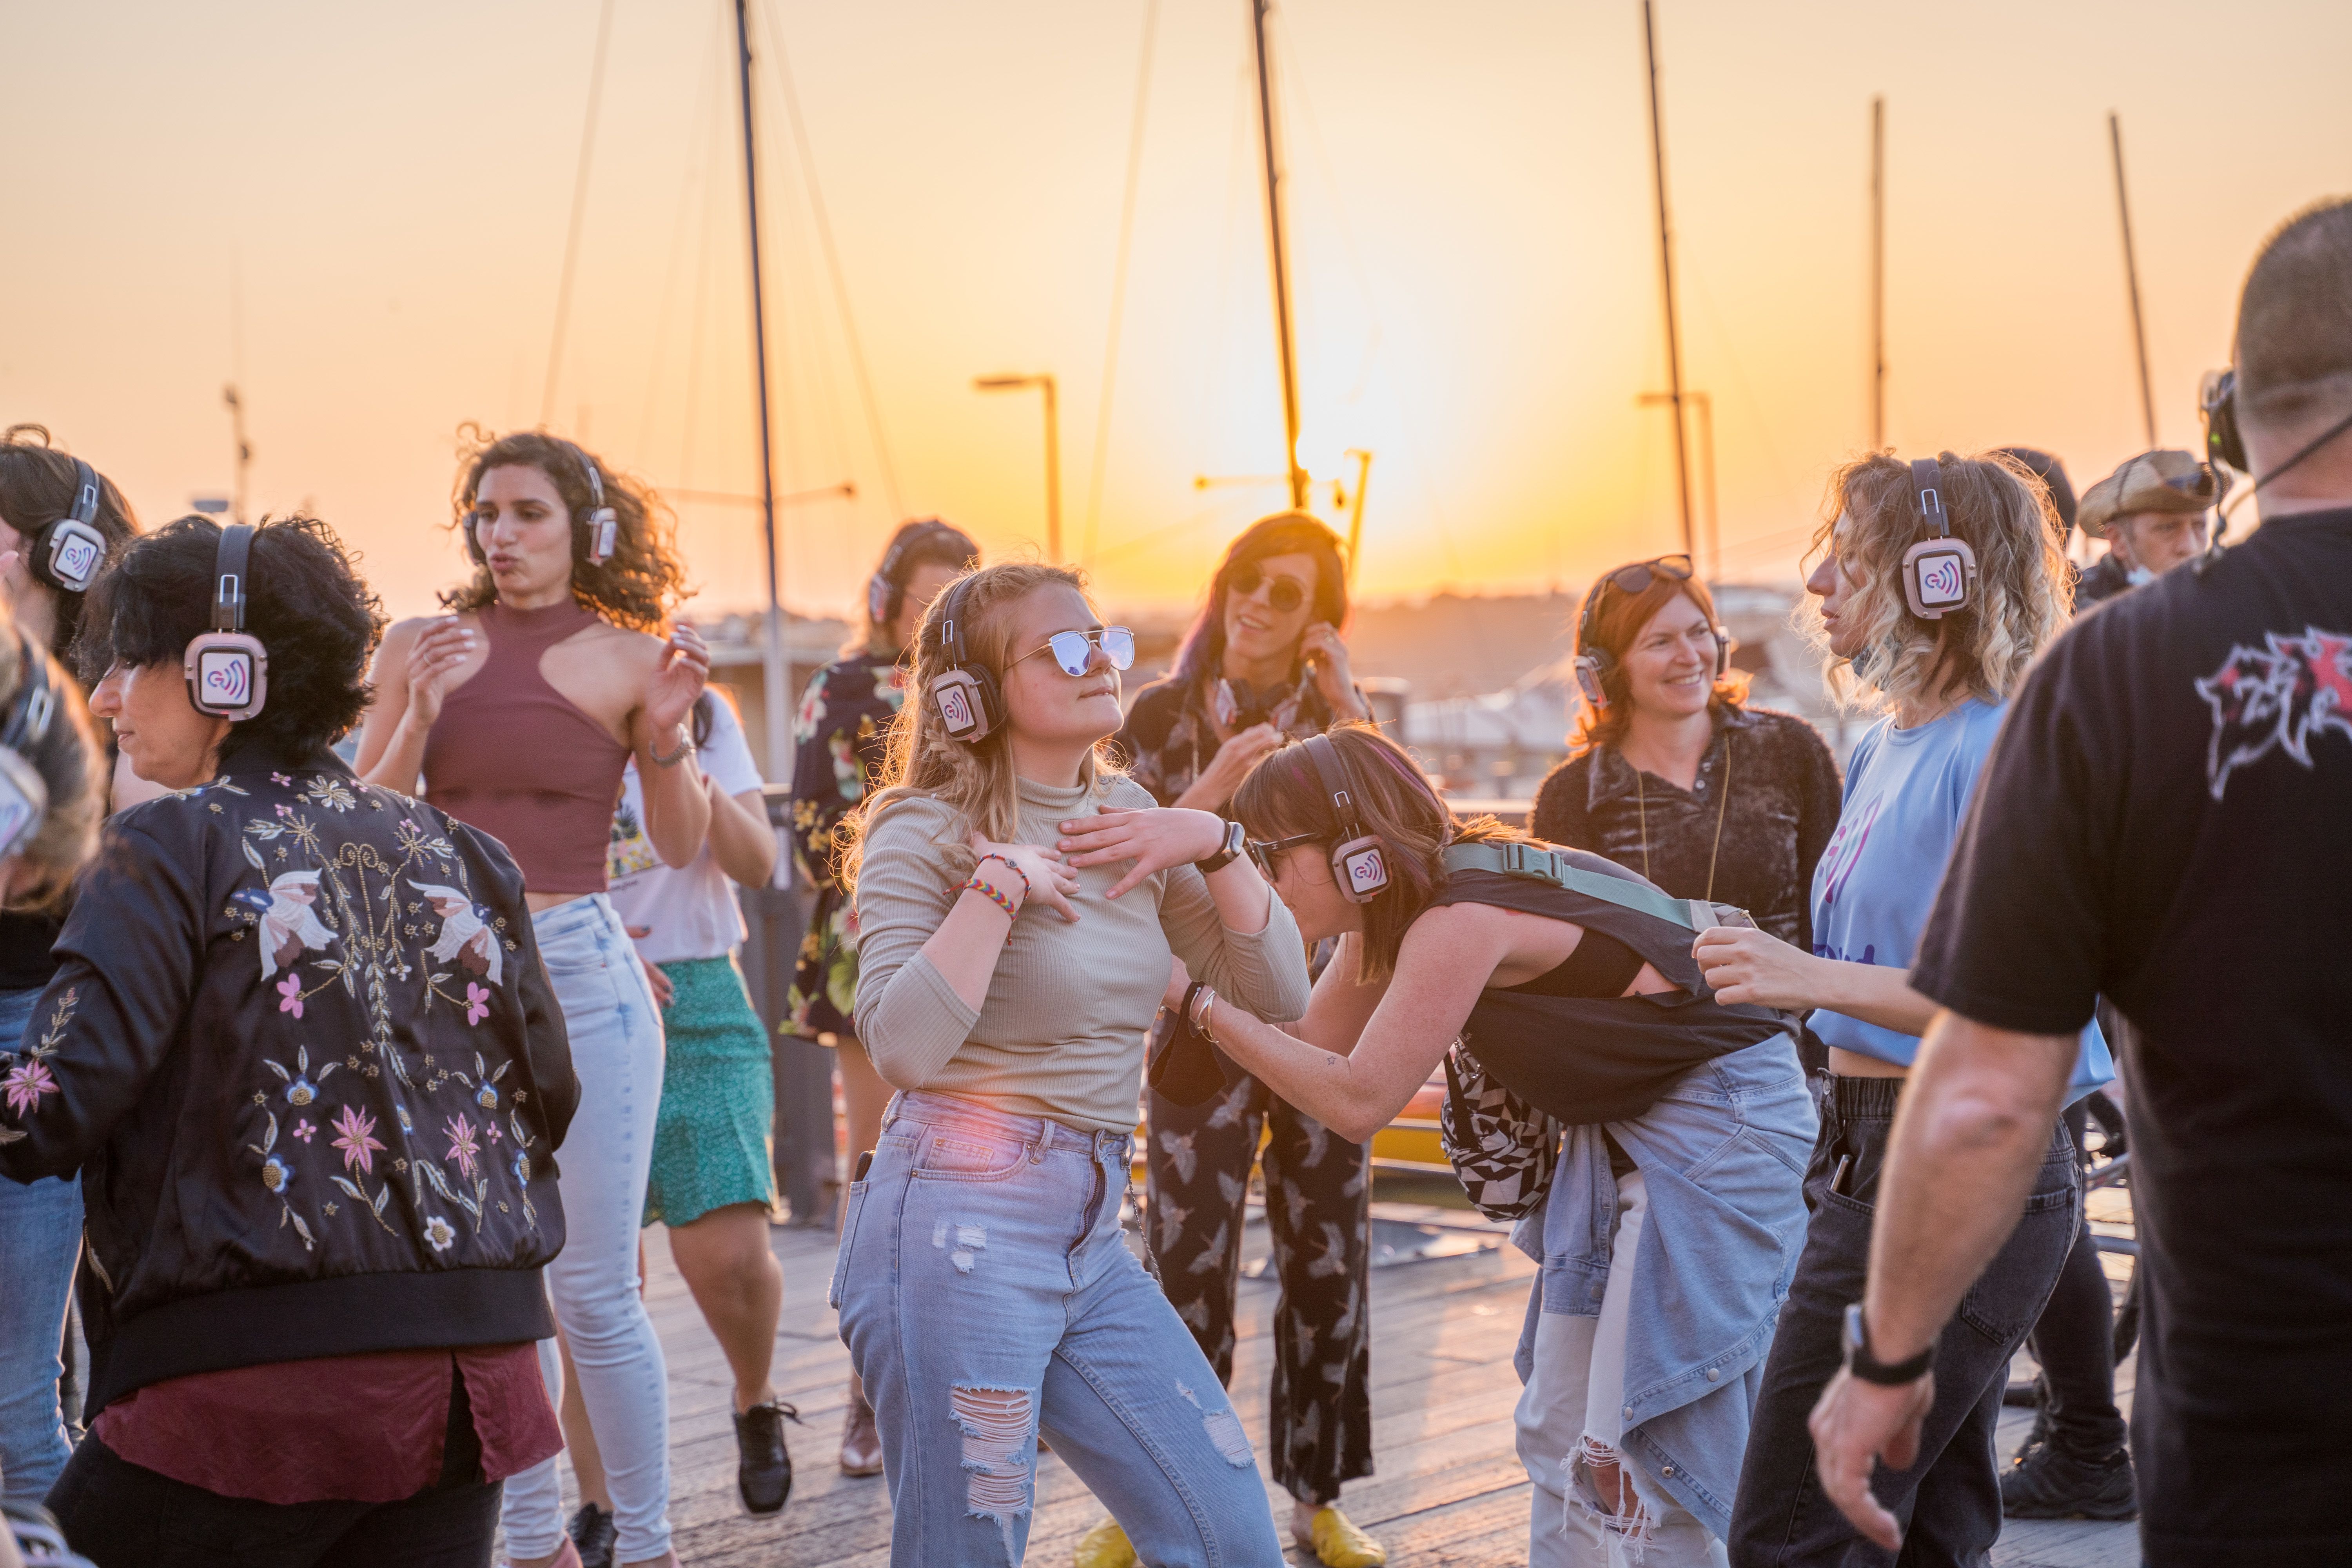 GROOVIT: חווית קצב ומוסיקה סוחפת בחיפה באוירת חנוכריסמס